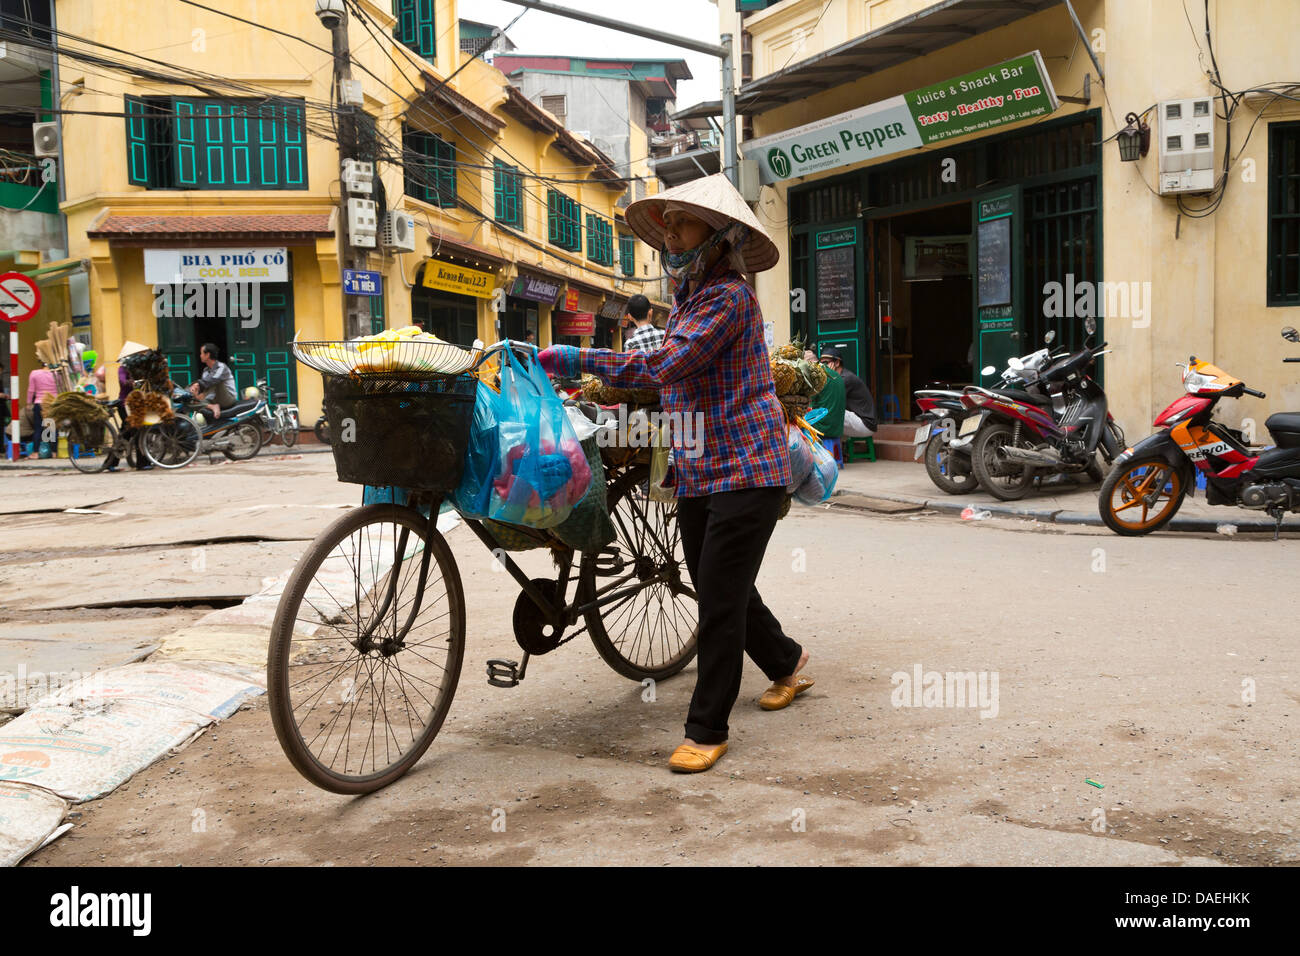 Vendeur de rue dans le vieux quartier de Hanoi, Vietnam Banque D'Images